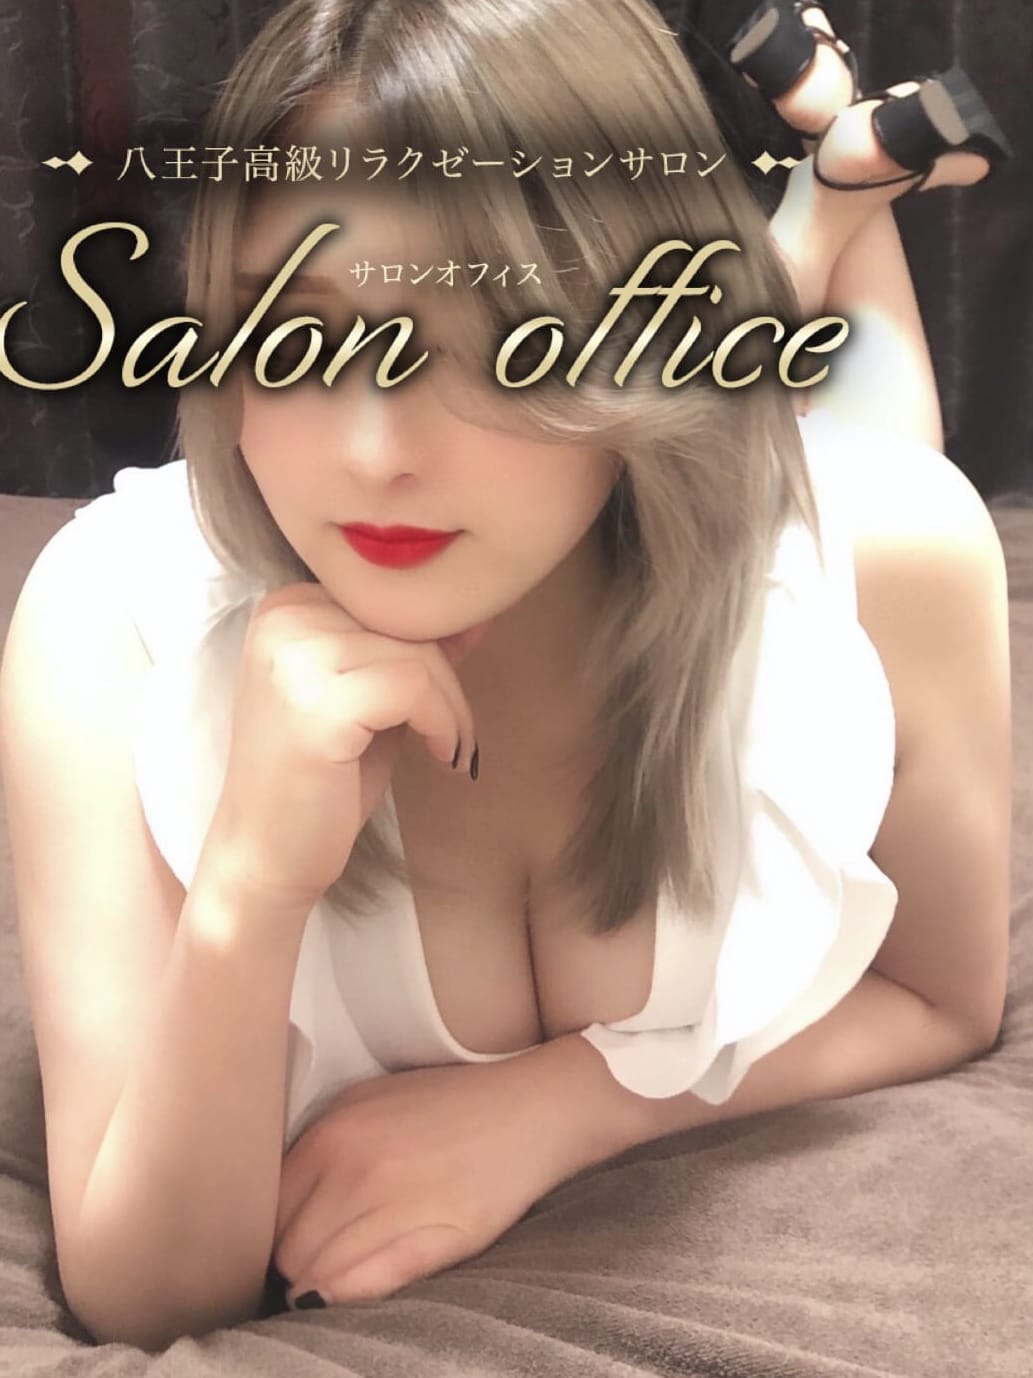 salon office〜サロンオフィス